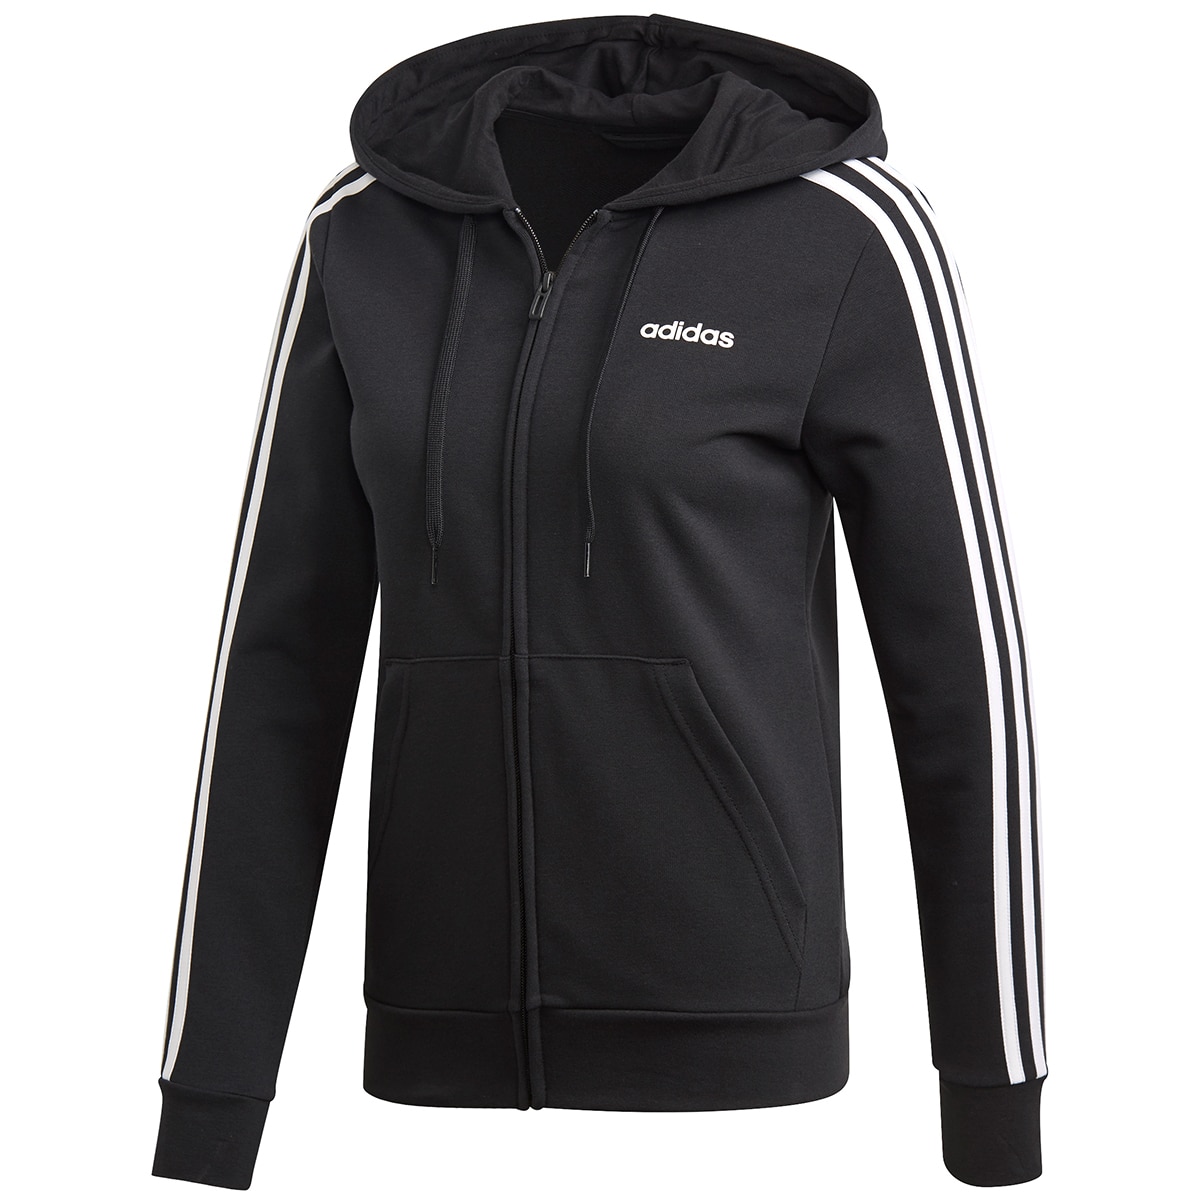 Adidas Women's 3D Full Zip Hooded Jacket - Black/White